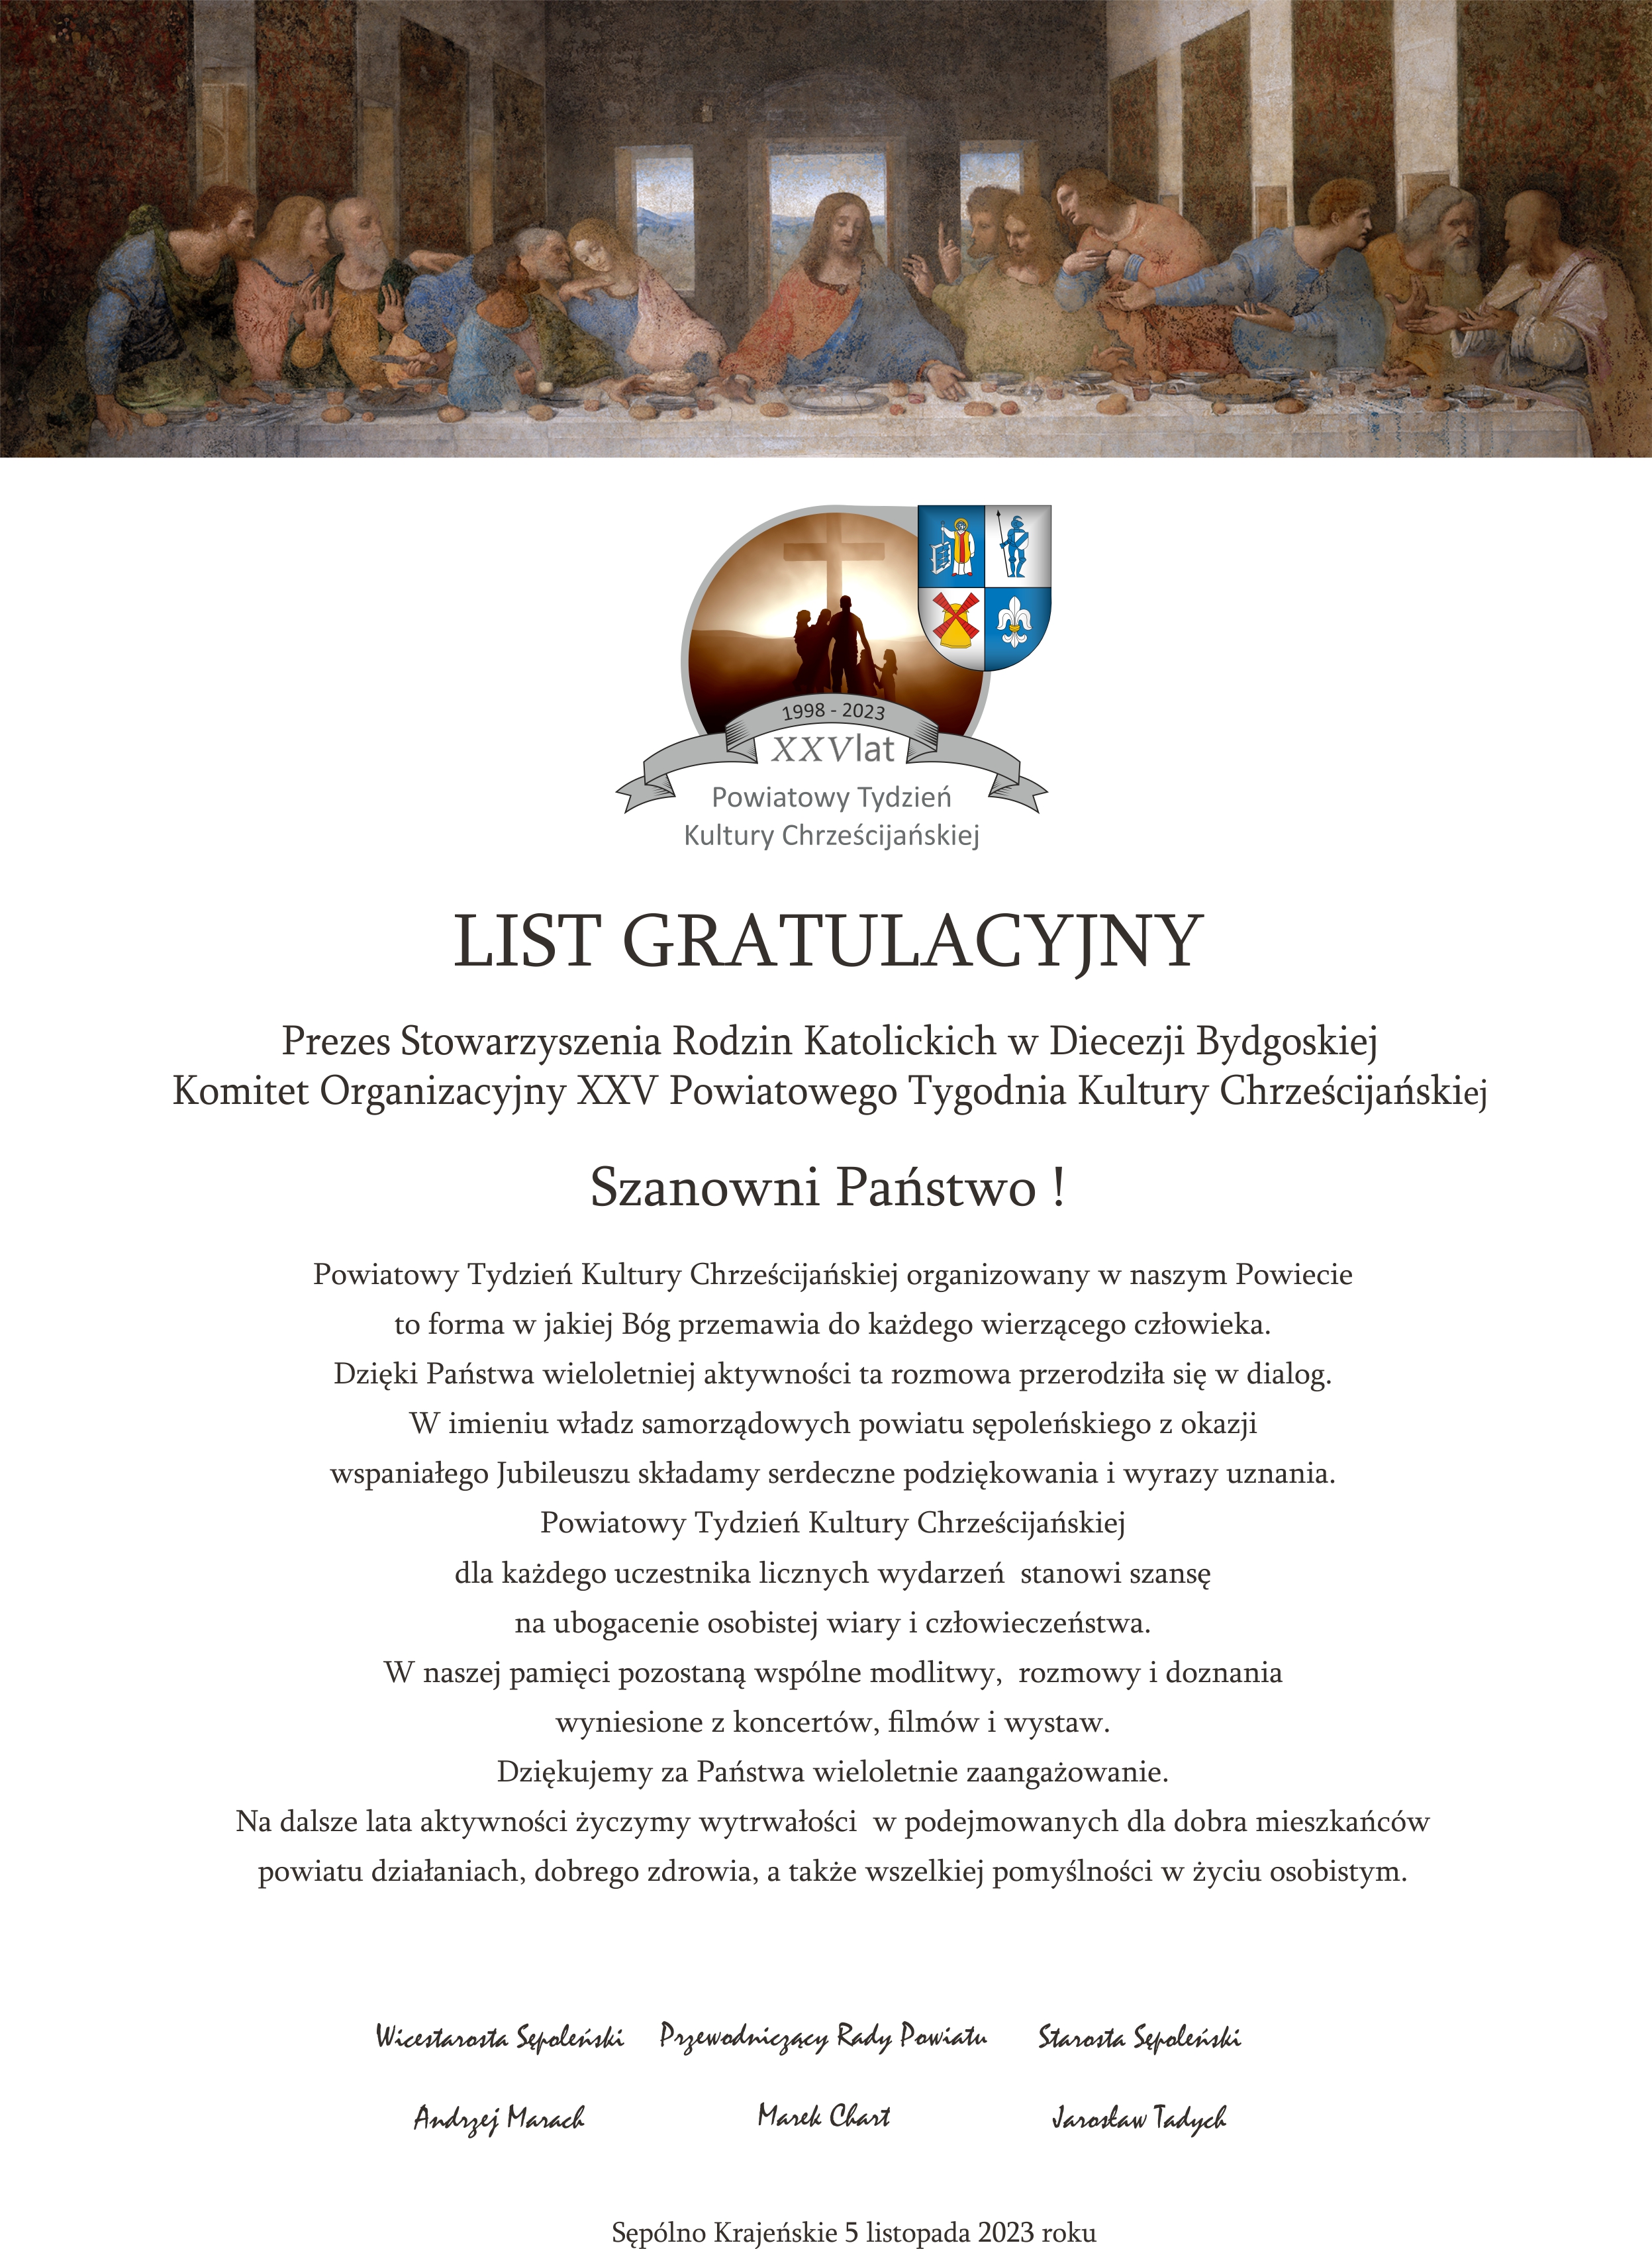 Spotkanie z okazji Jubileuszu XXV-lecia Powiatowego Tygodnia Kultury Cheścijańskiej